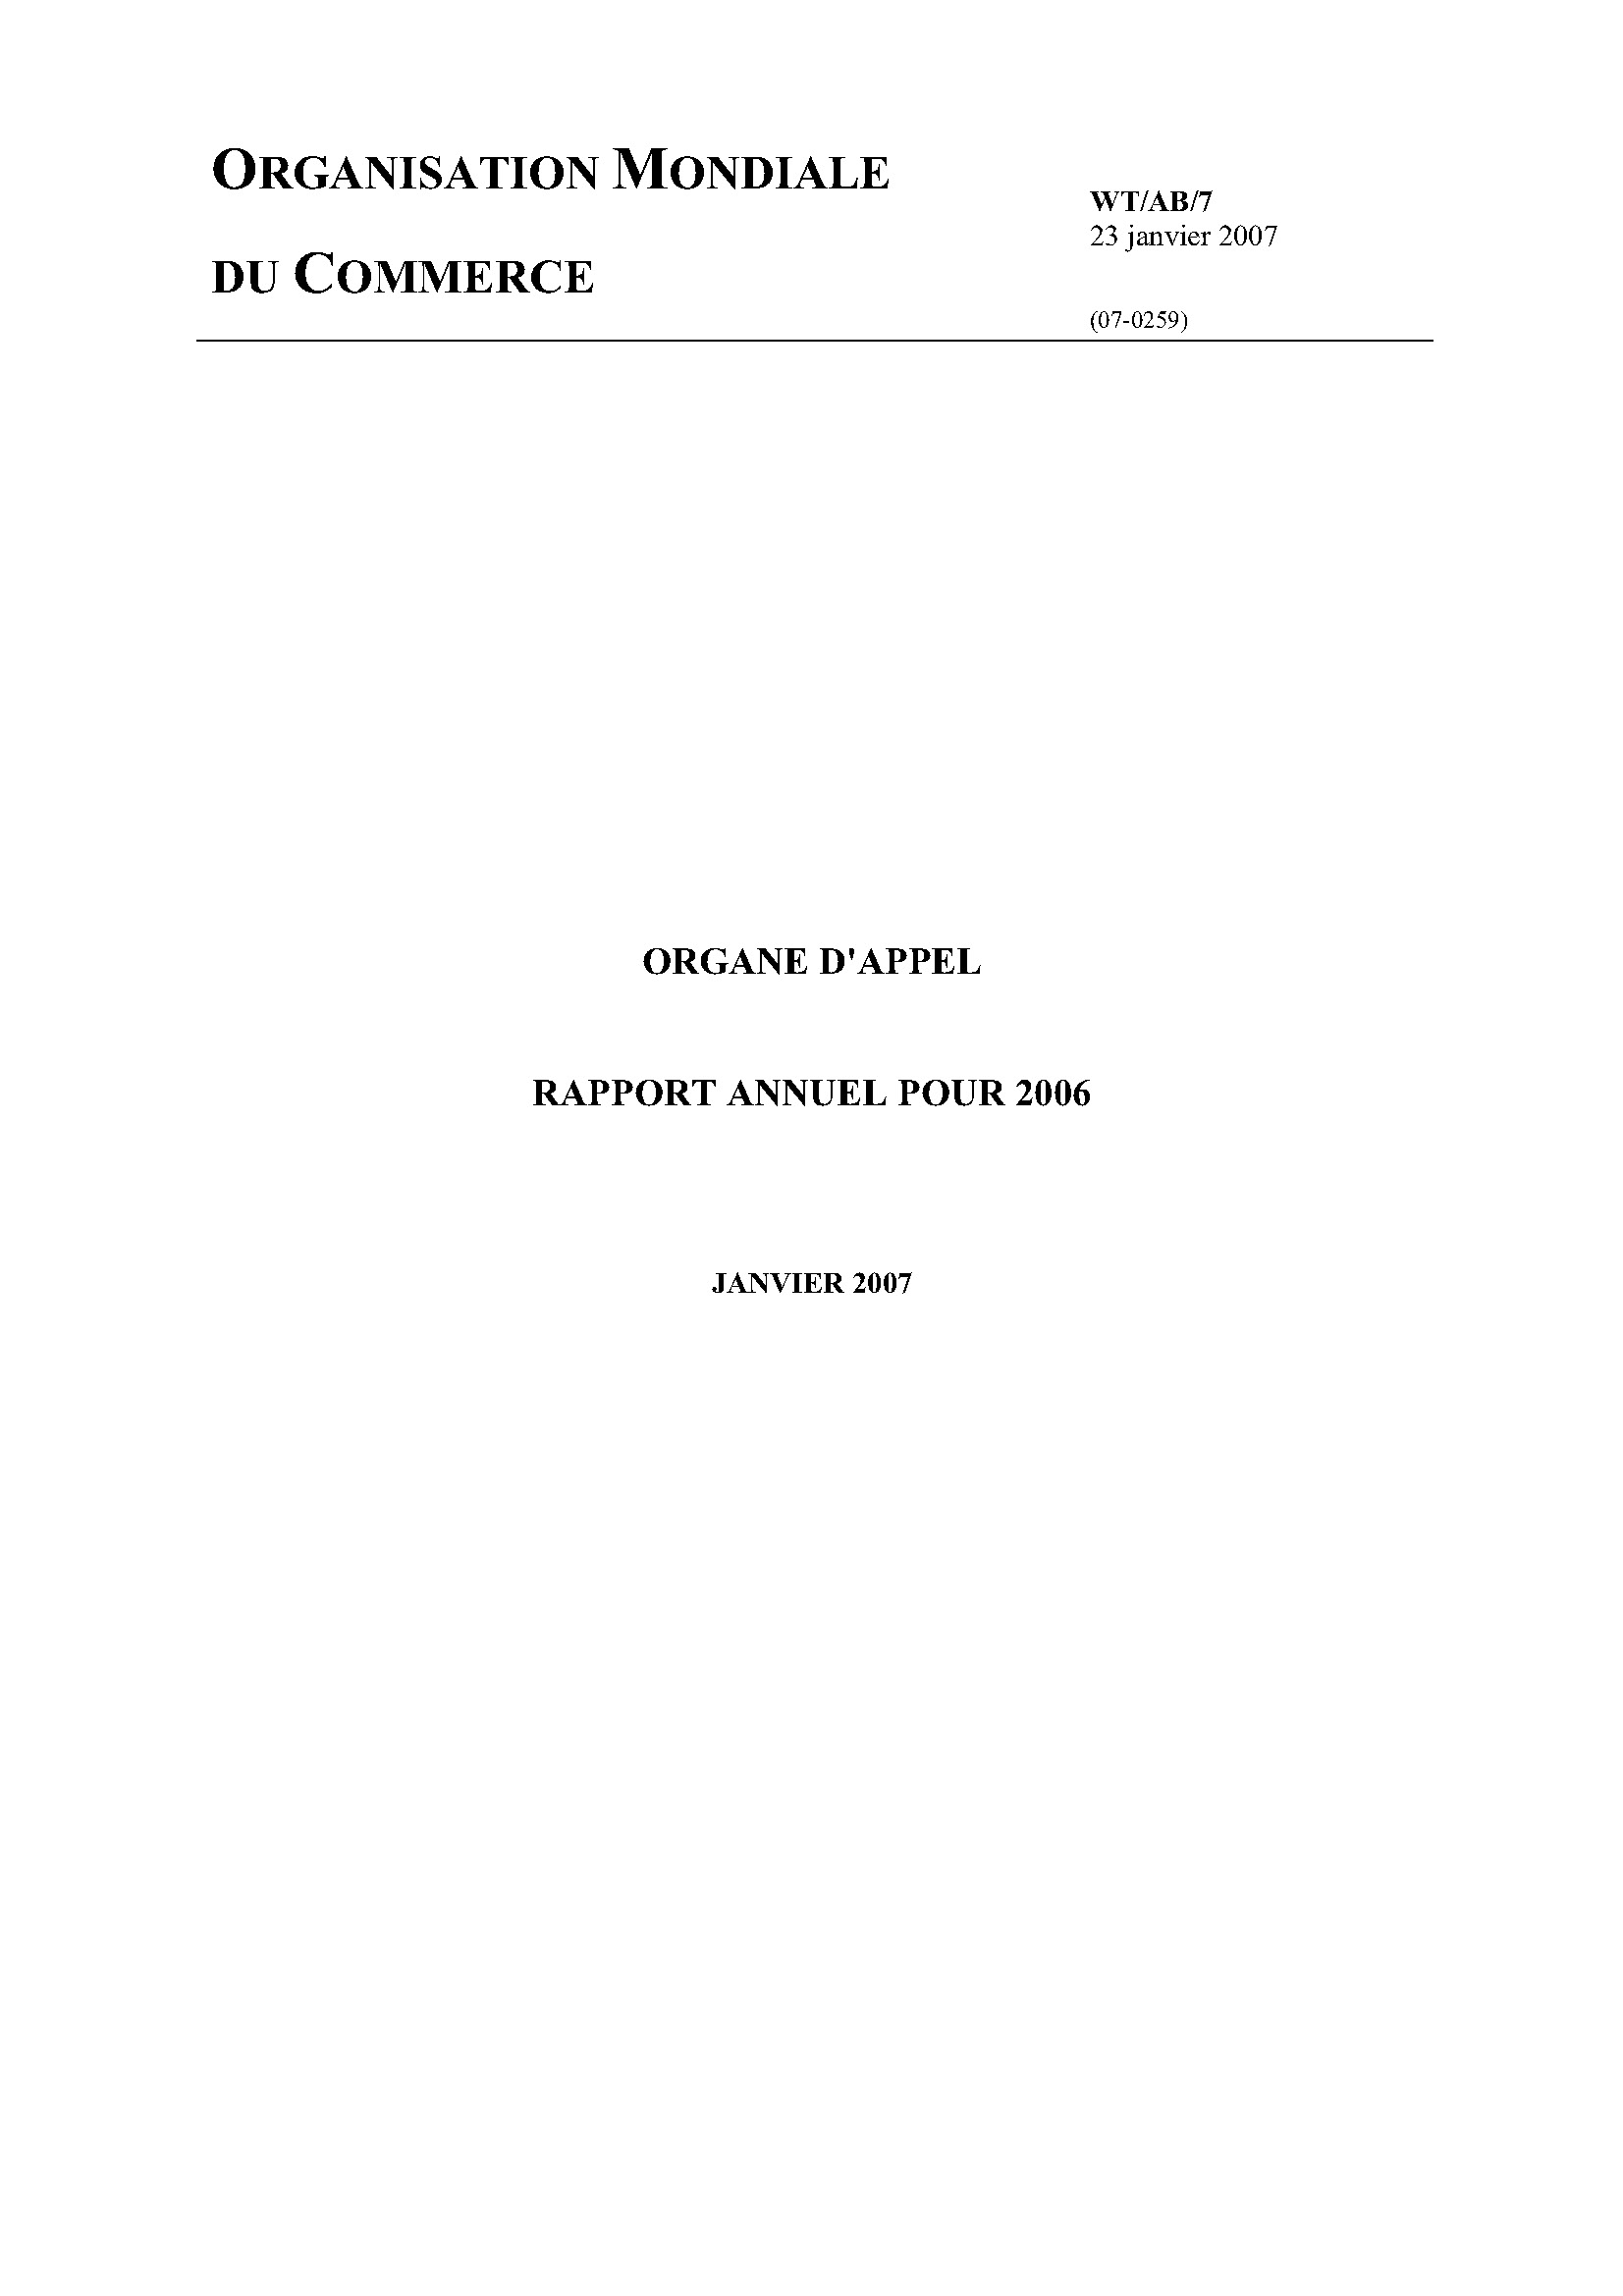 image of Rapport annuel de l’organe d’appel pour 2006